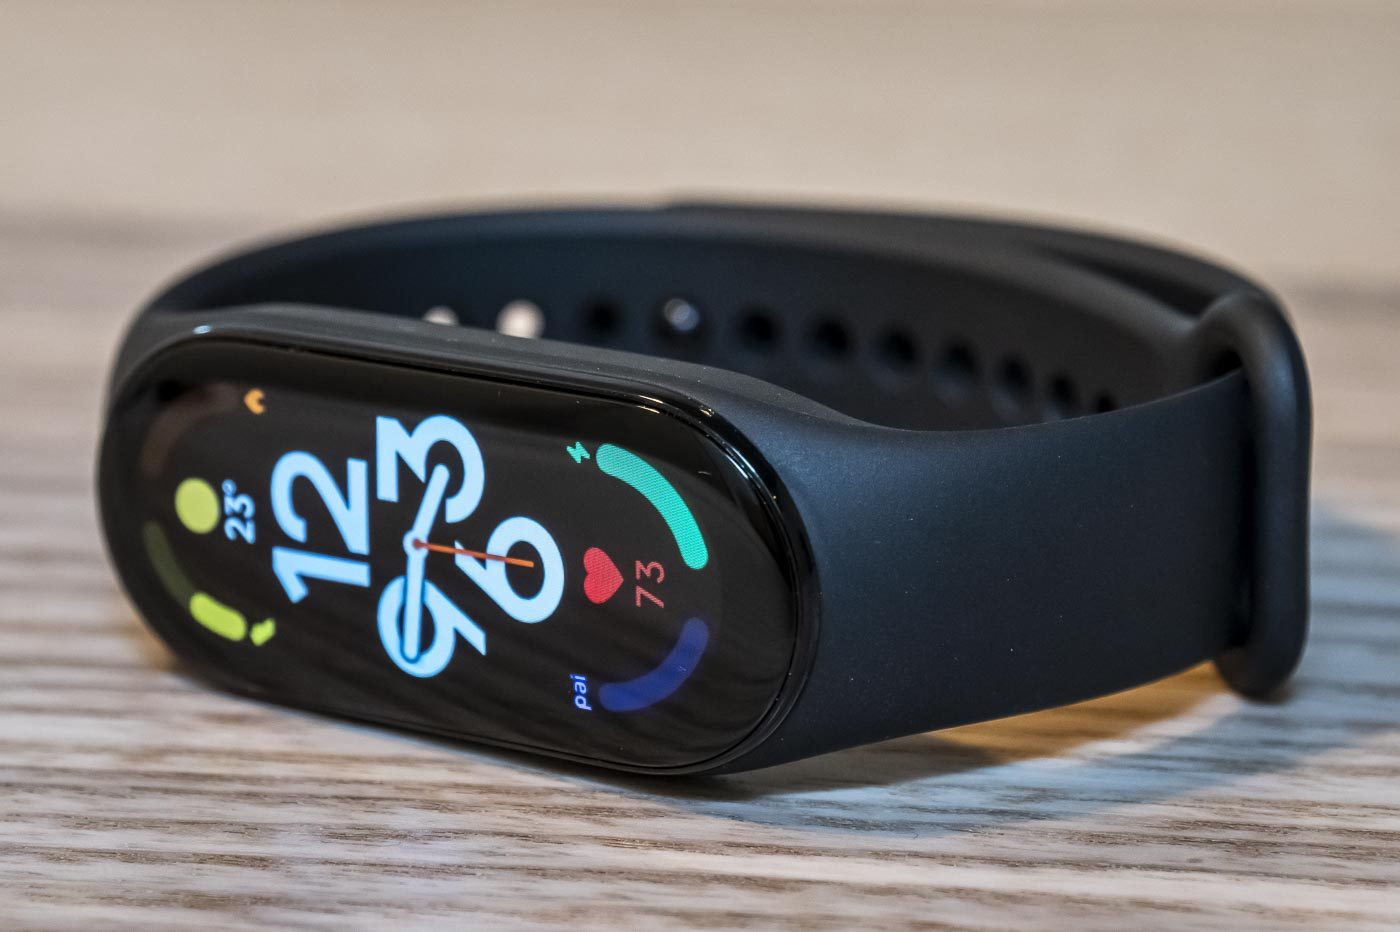 Smart Band 7 : Xiaomi dévoile son nouveau bracelet connecté avec écran  Amoled - CNET France